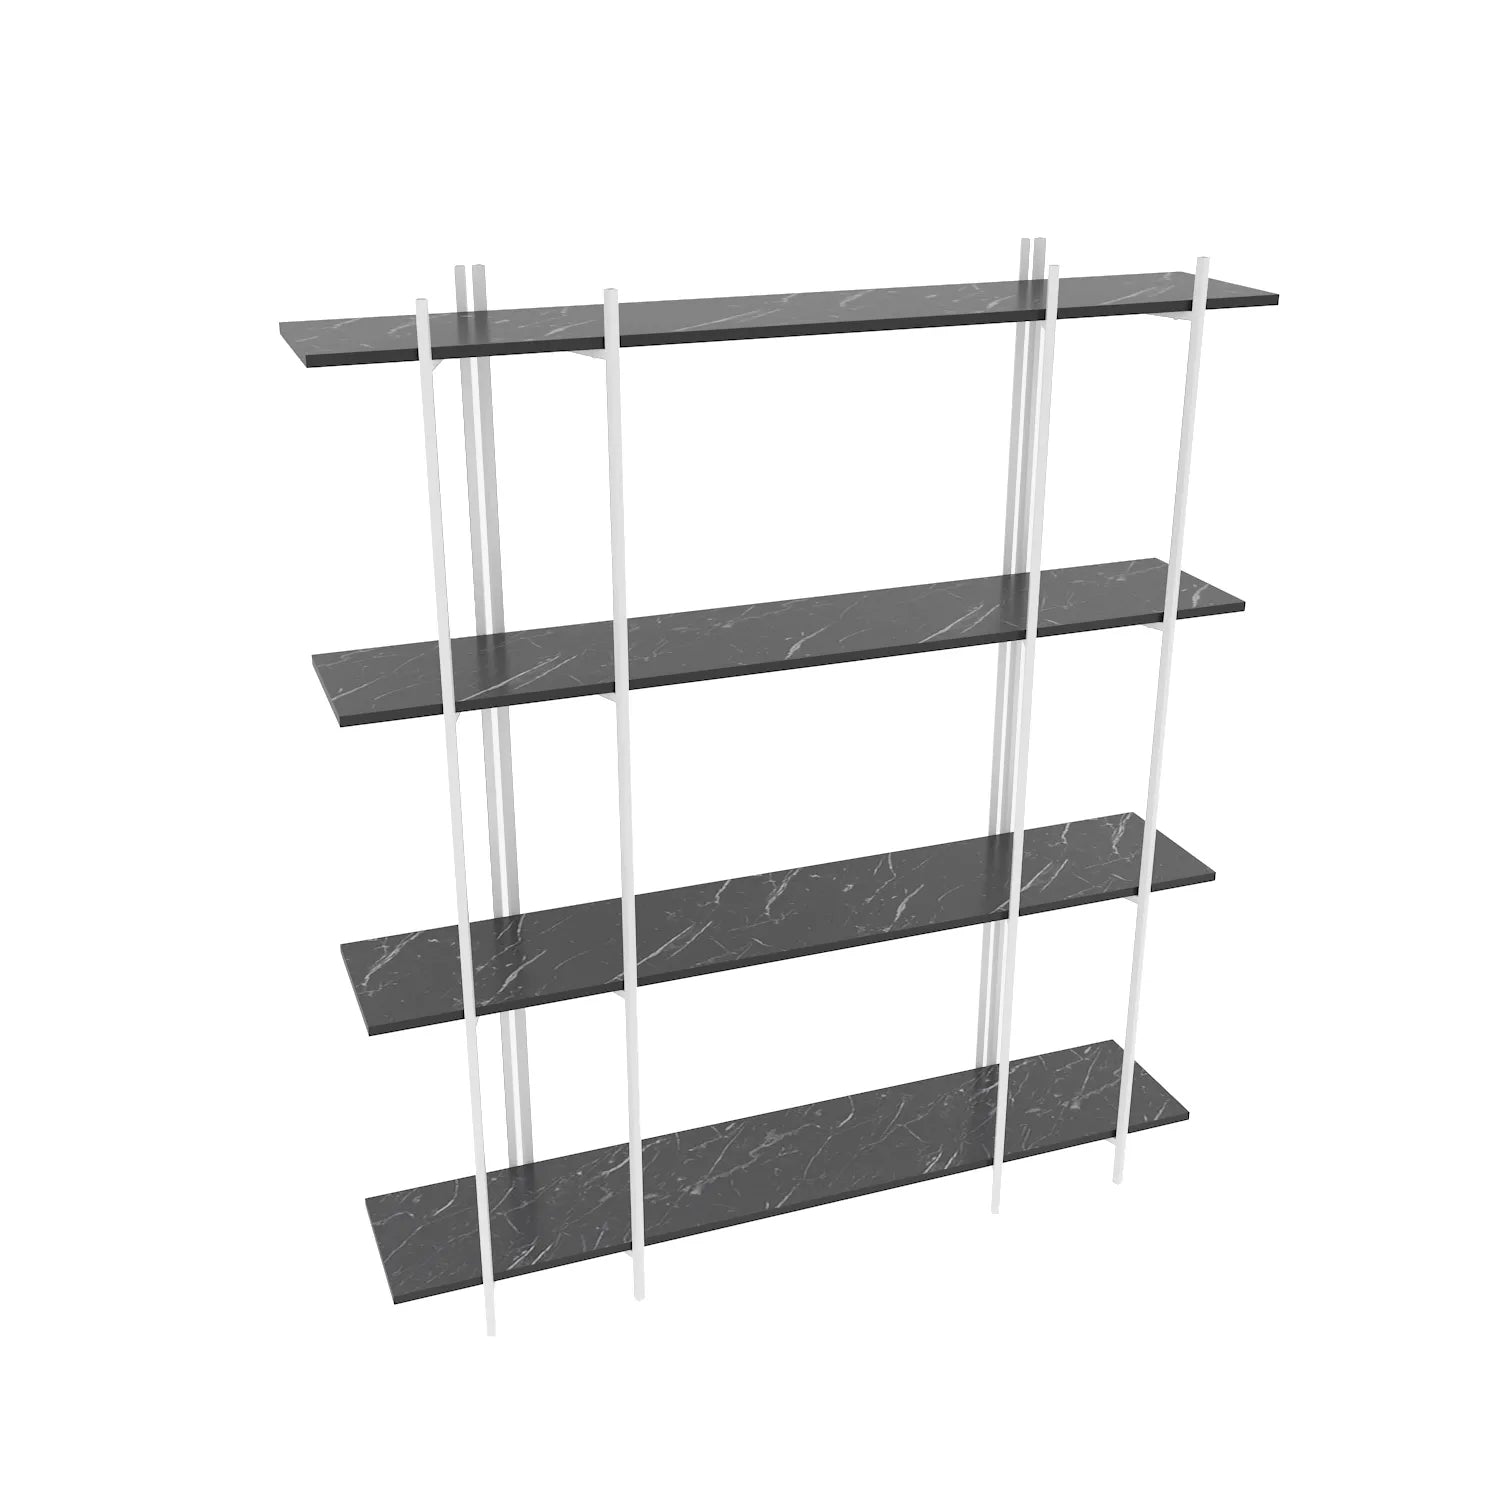 Moss 71" Tall Metal Wood Bookcase | Bookshelf | Display Unit